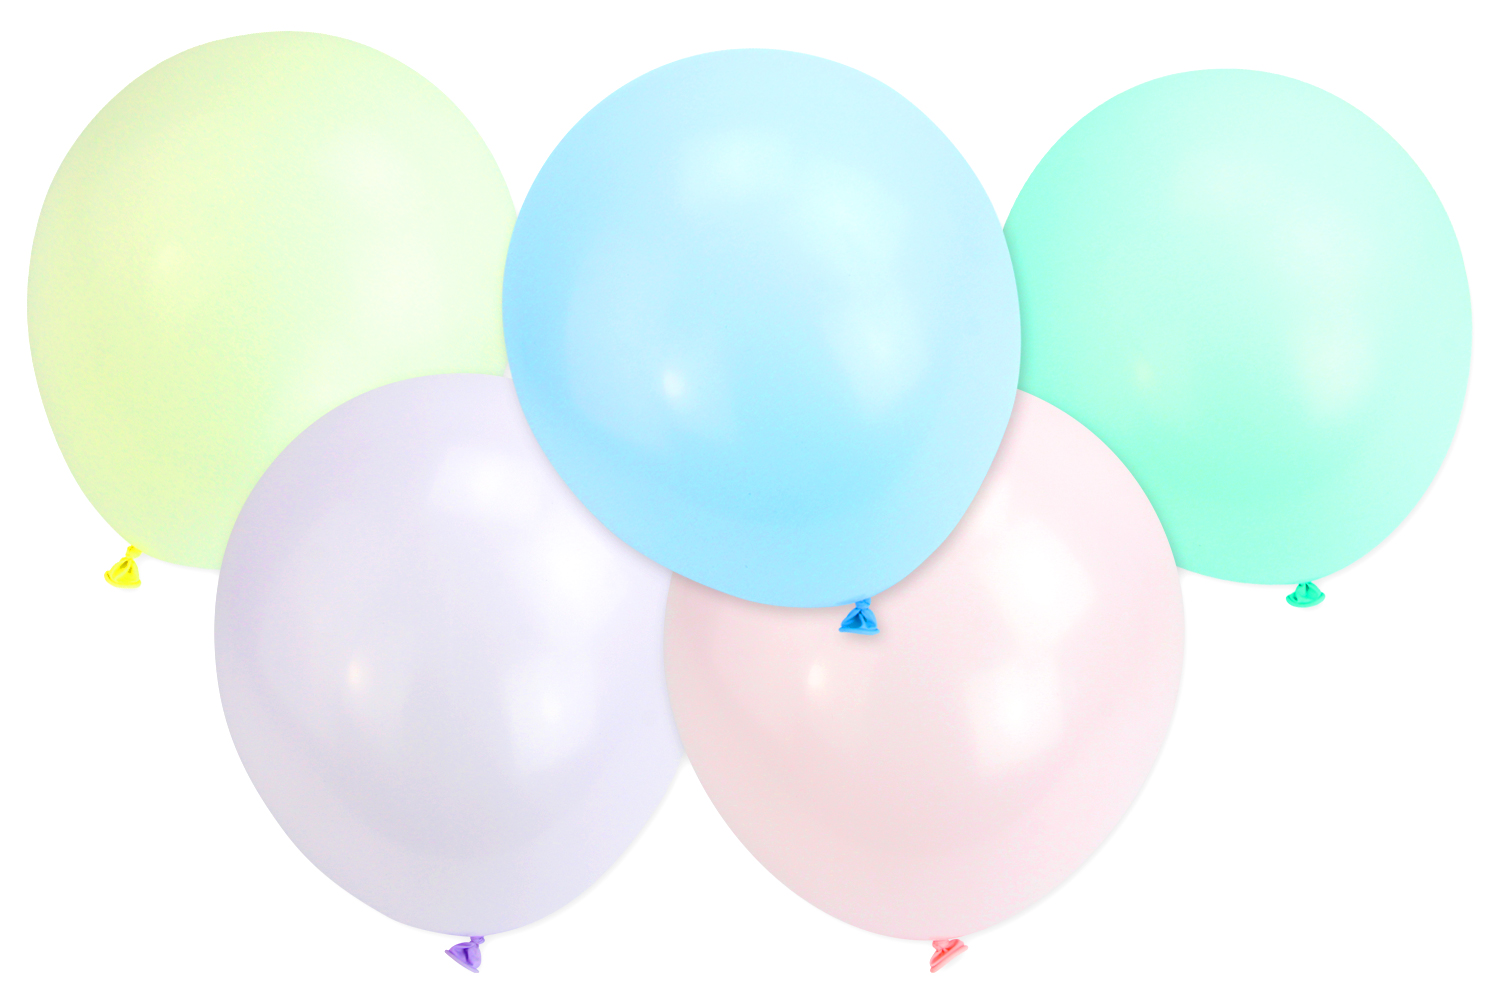 Ballons en latex de couleur bonbon couleur mélangée 100 pièces